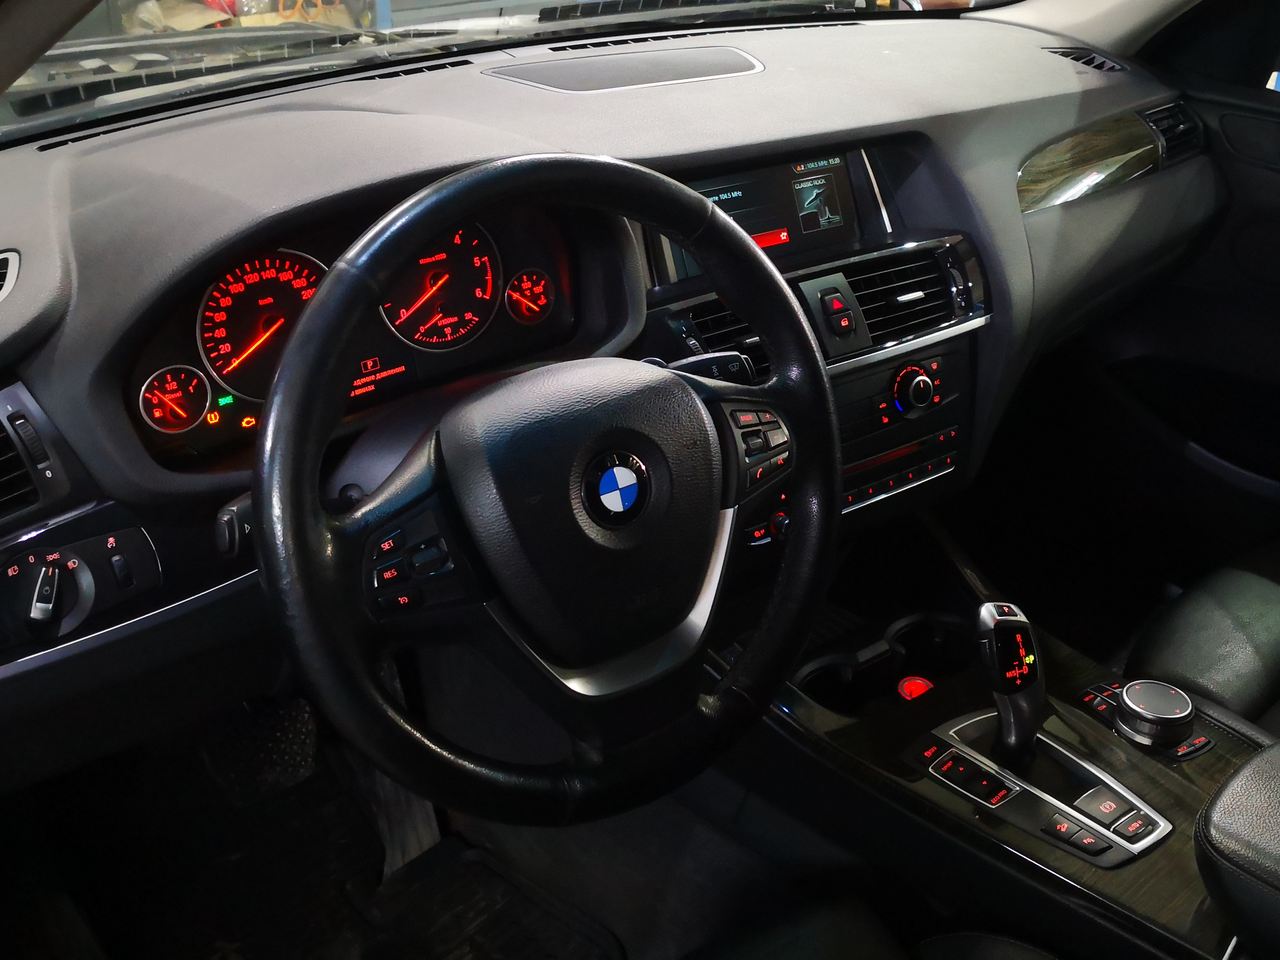 дооснащение BMW F25 X3 головным устройством NBT Evo